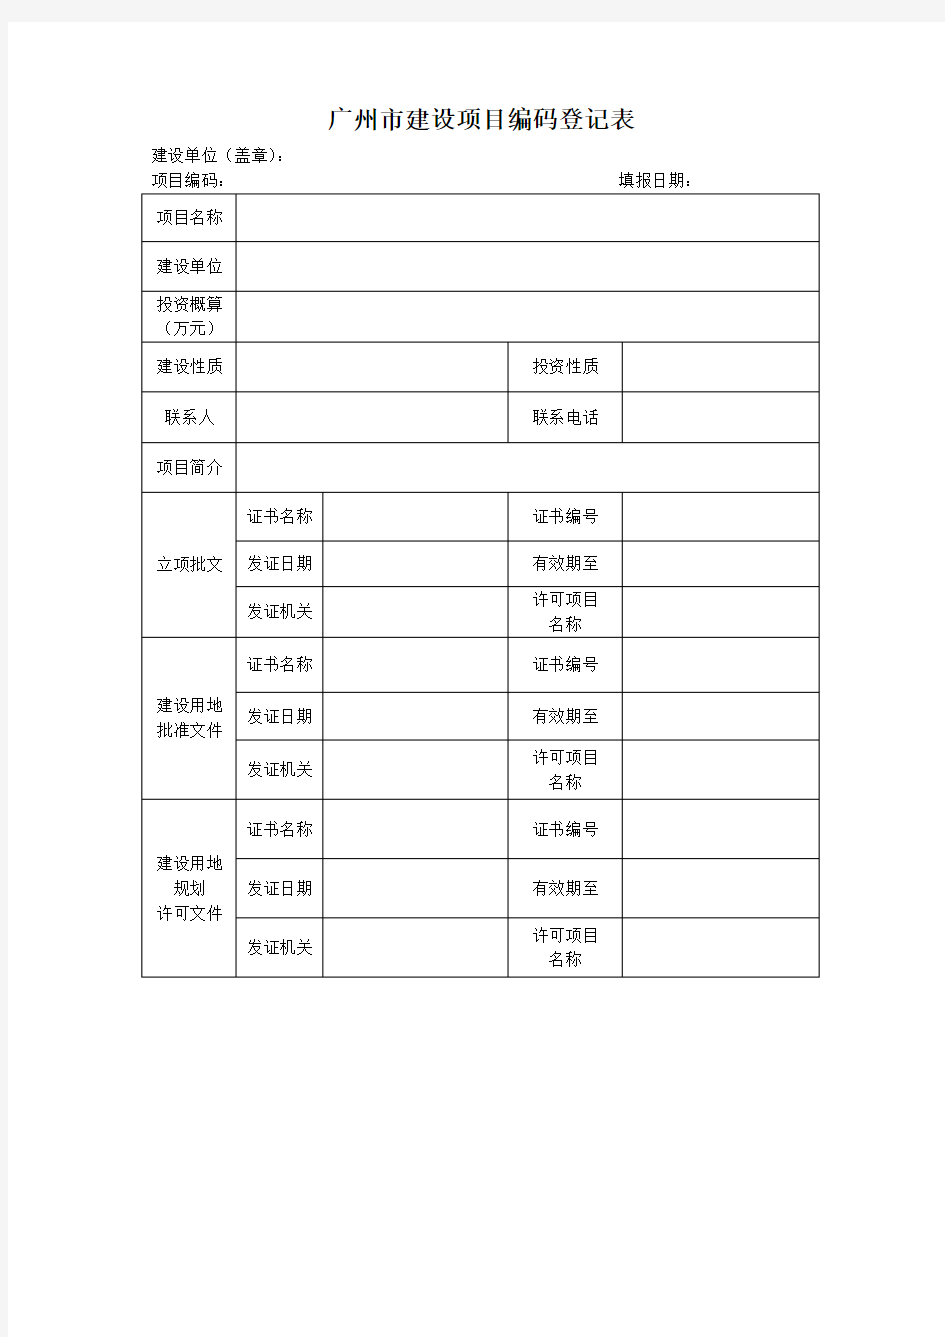 《广州市建设项目编码登记表》、《广州市单项工程编码登记表》的填写要求